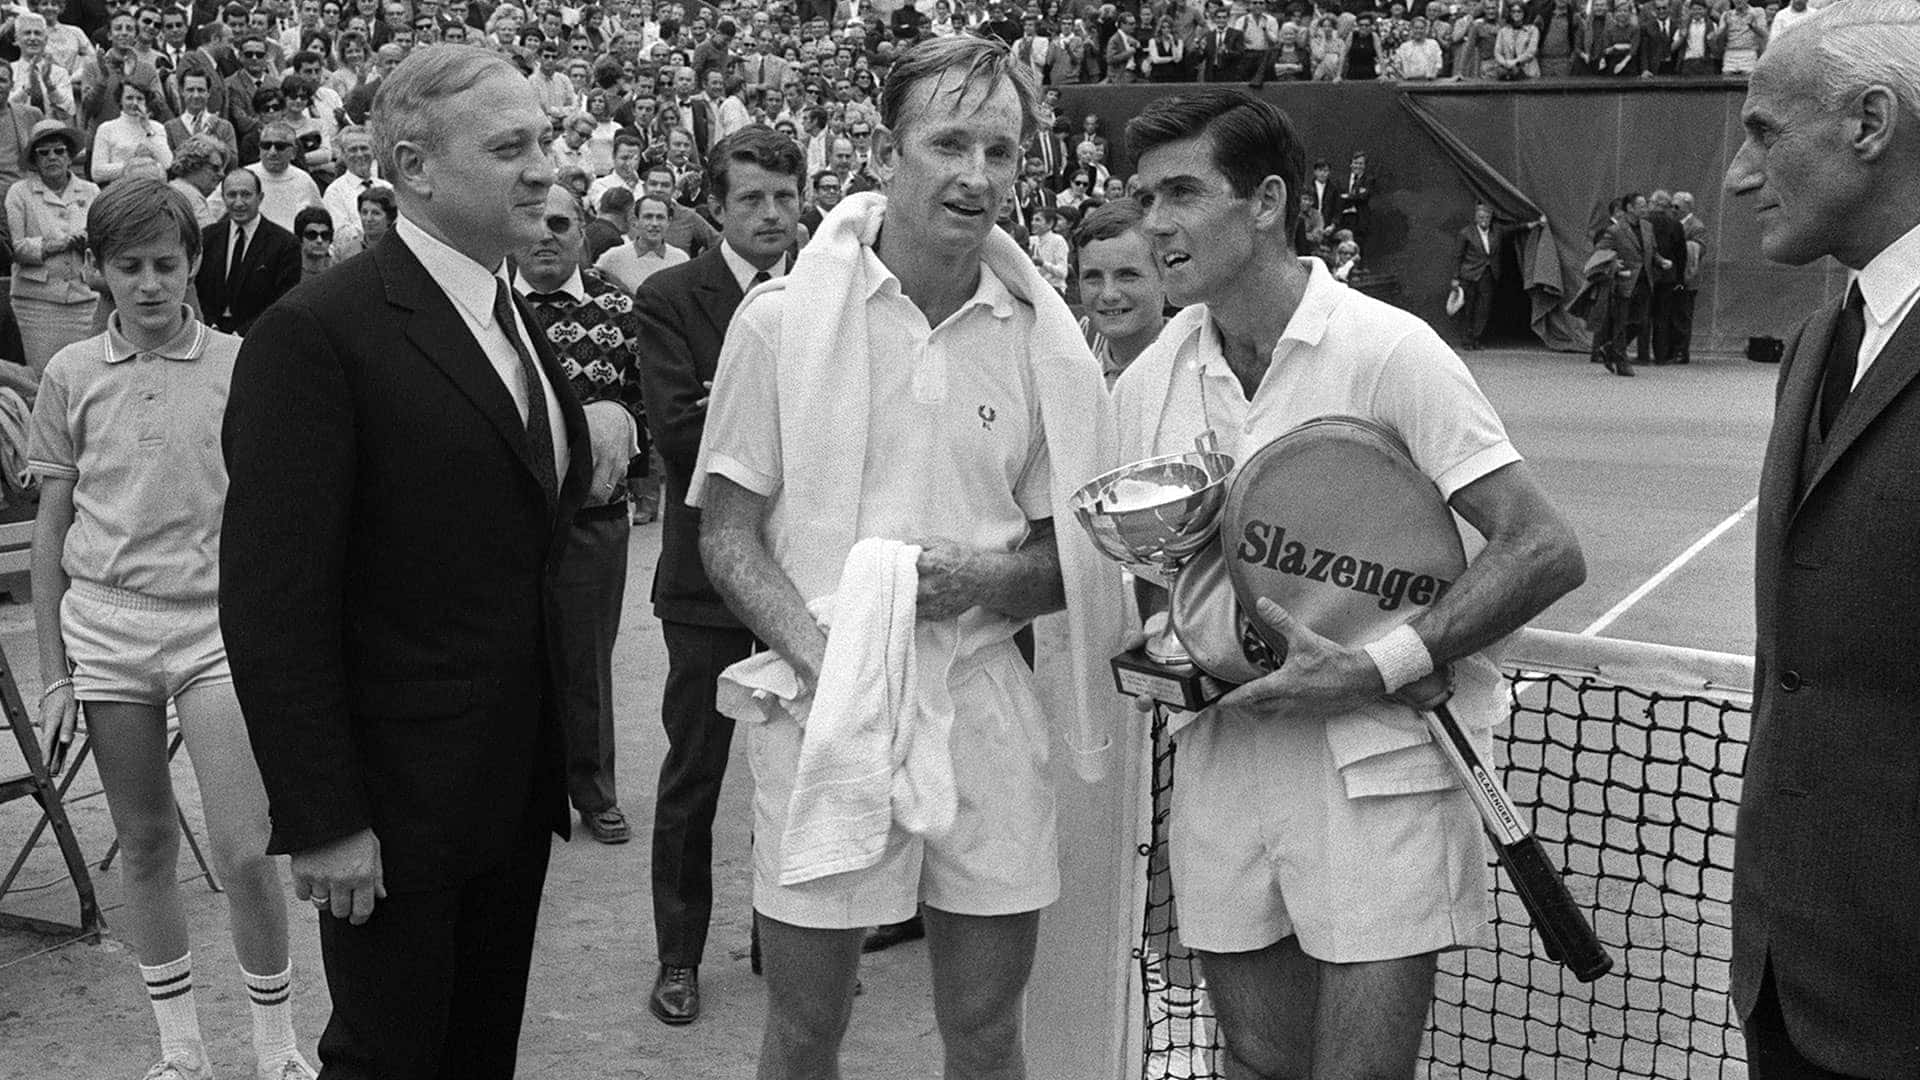 Ken Rosewall Roland Garros 1968 Fotografi. Wallpaper